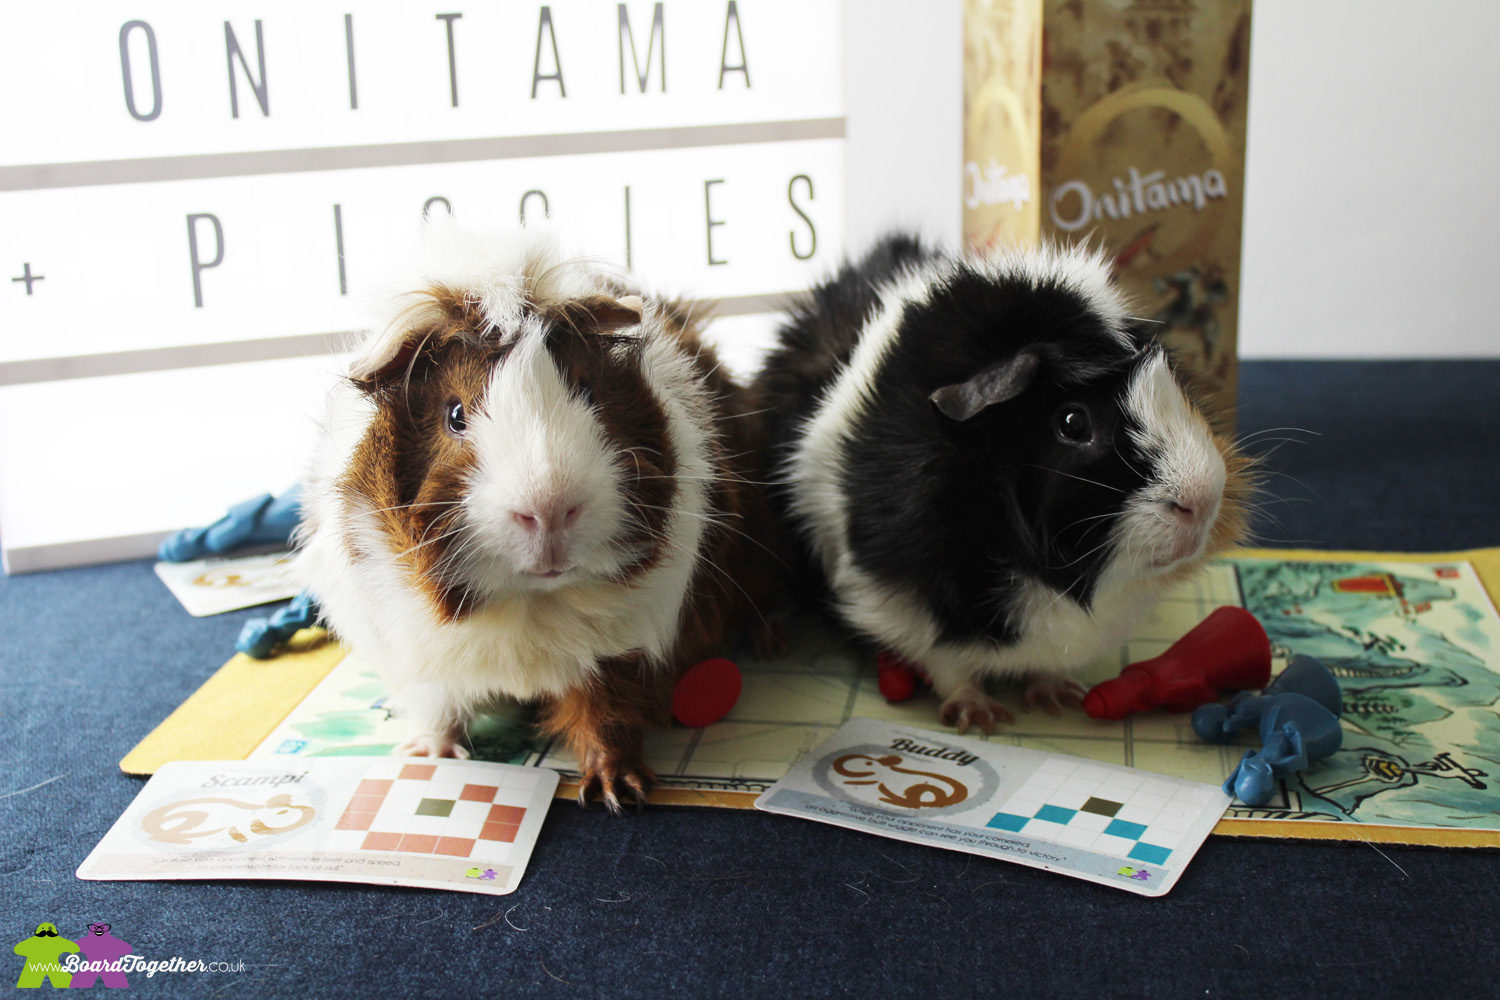 Onitama guinea pig custom made cards